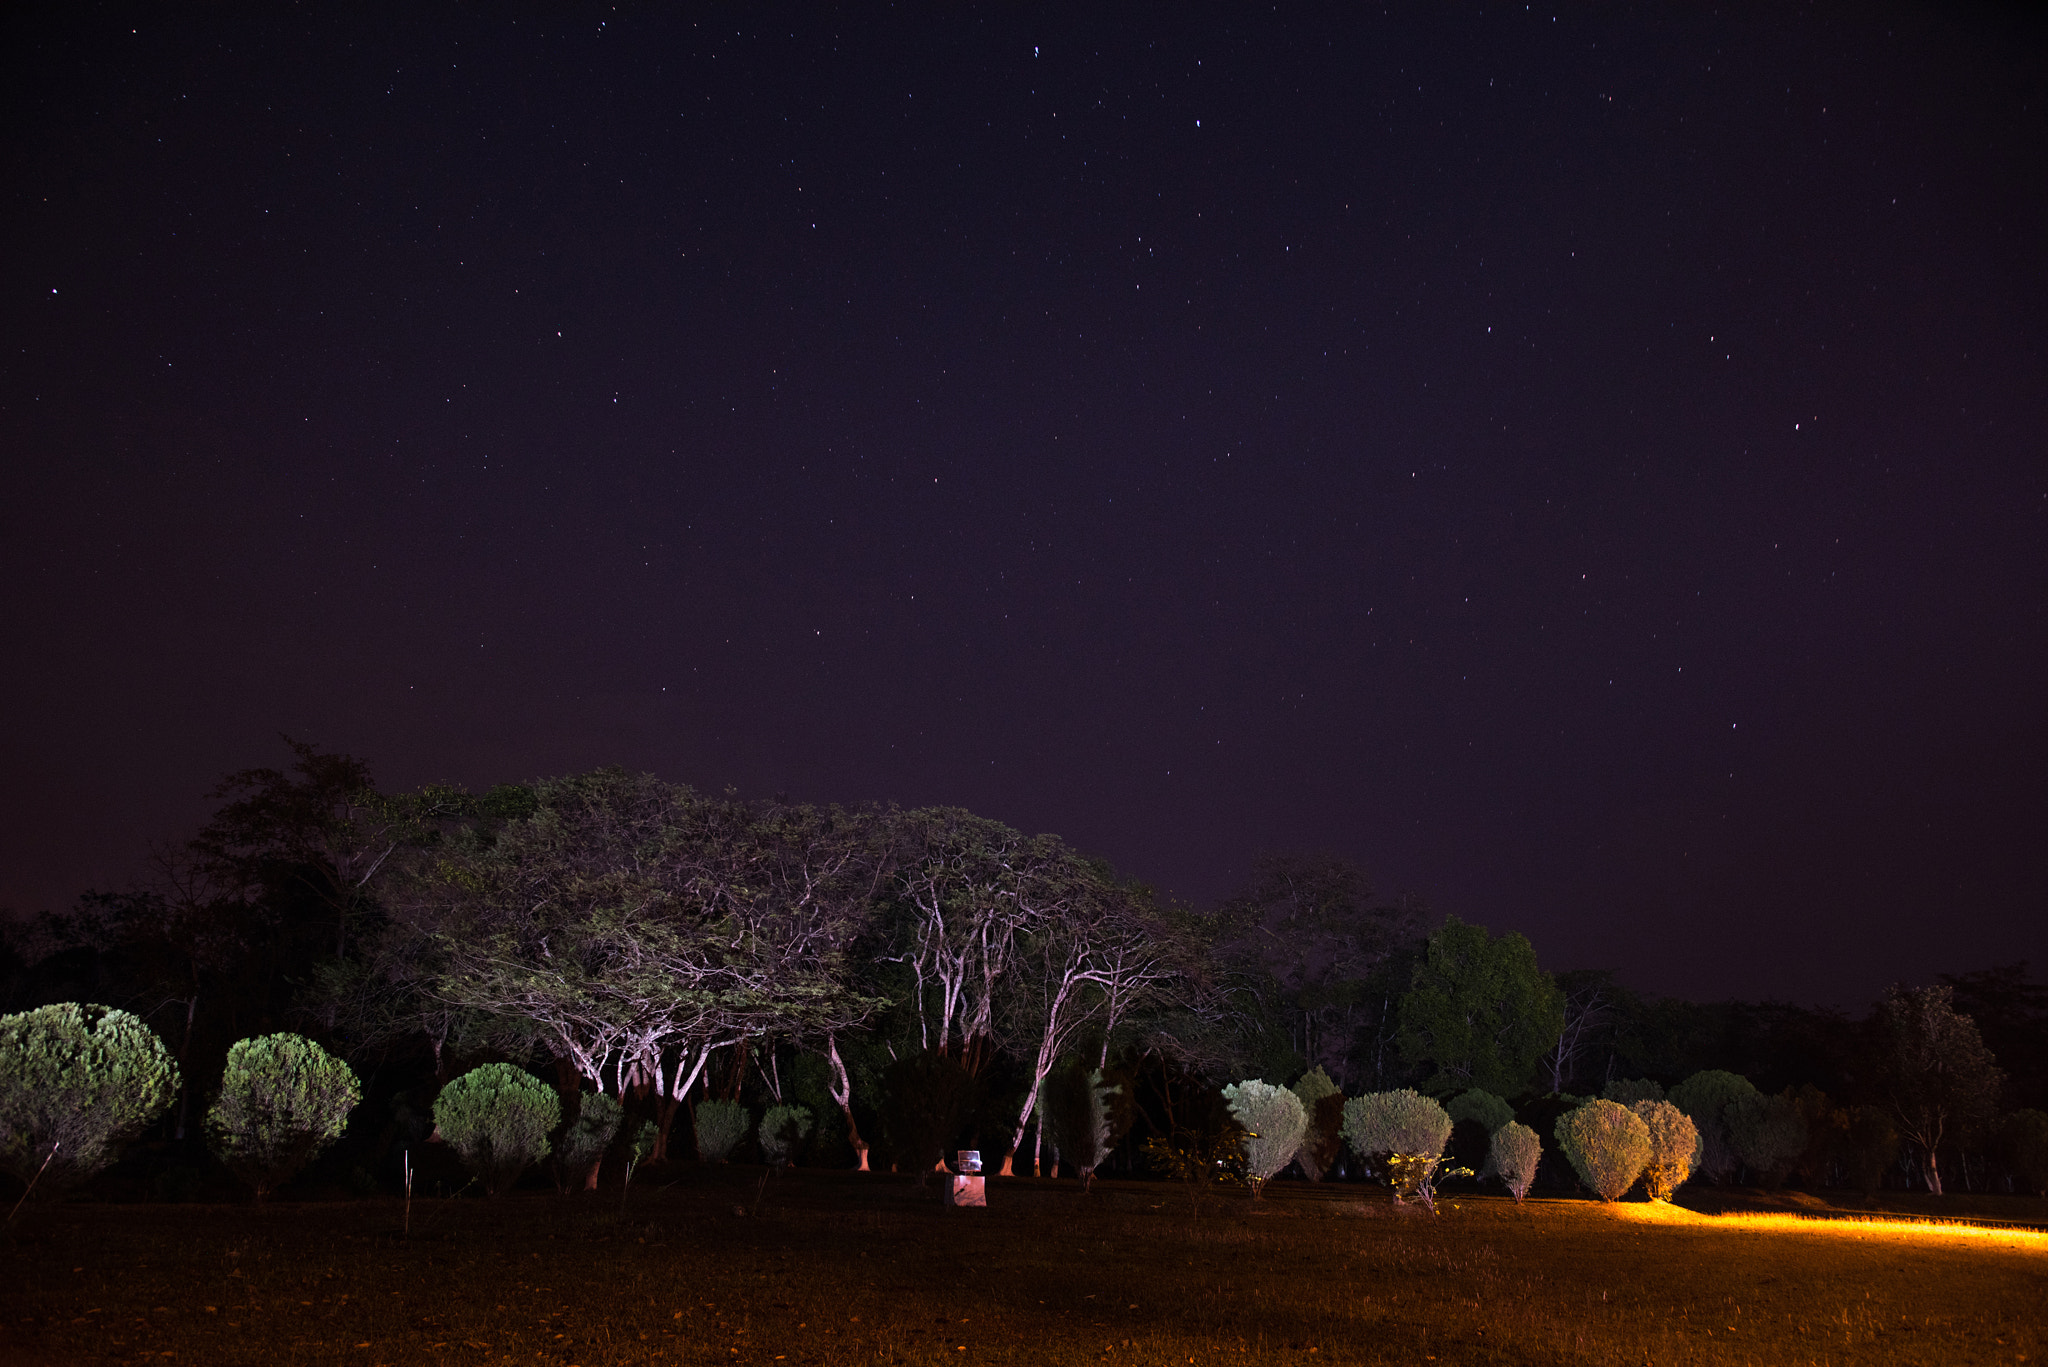 Nikon D810 sample photo. Beautiful night sky photography